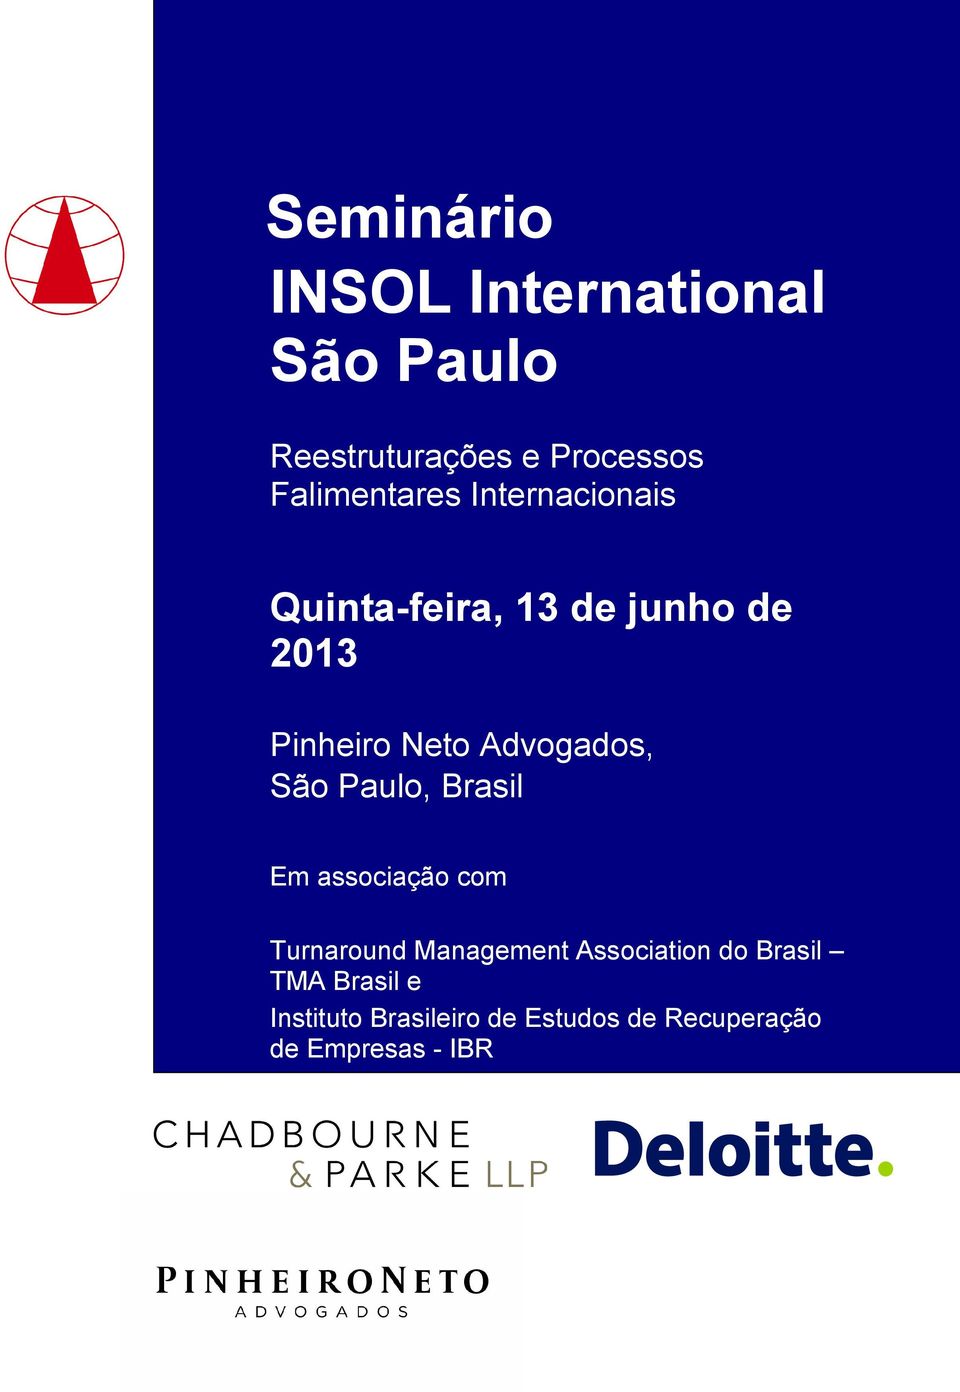 Advogados, São Paulo, Brasil Em associação com Turnaround Management